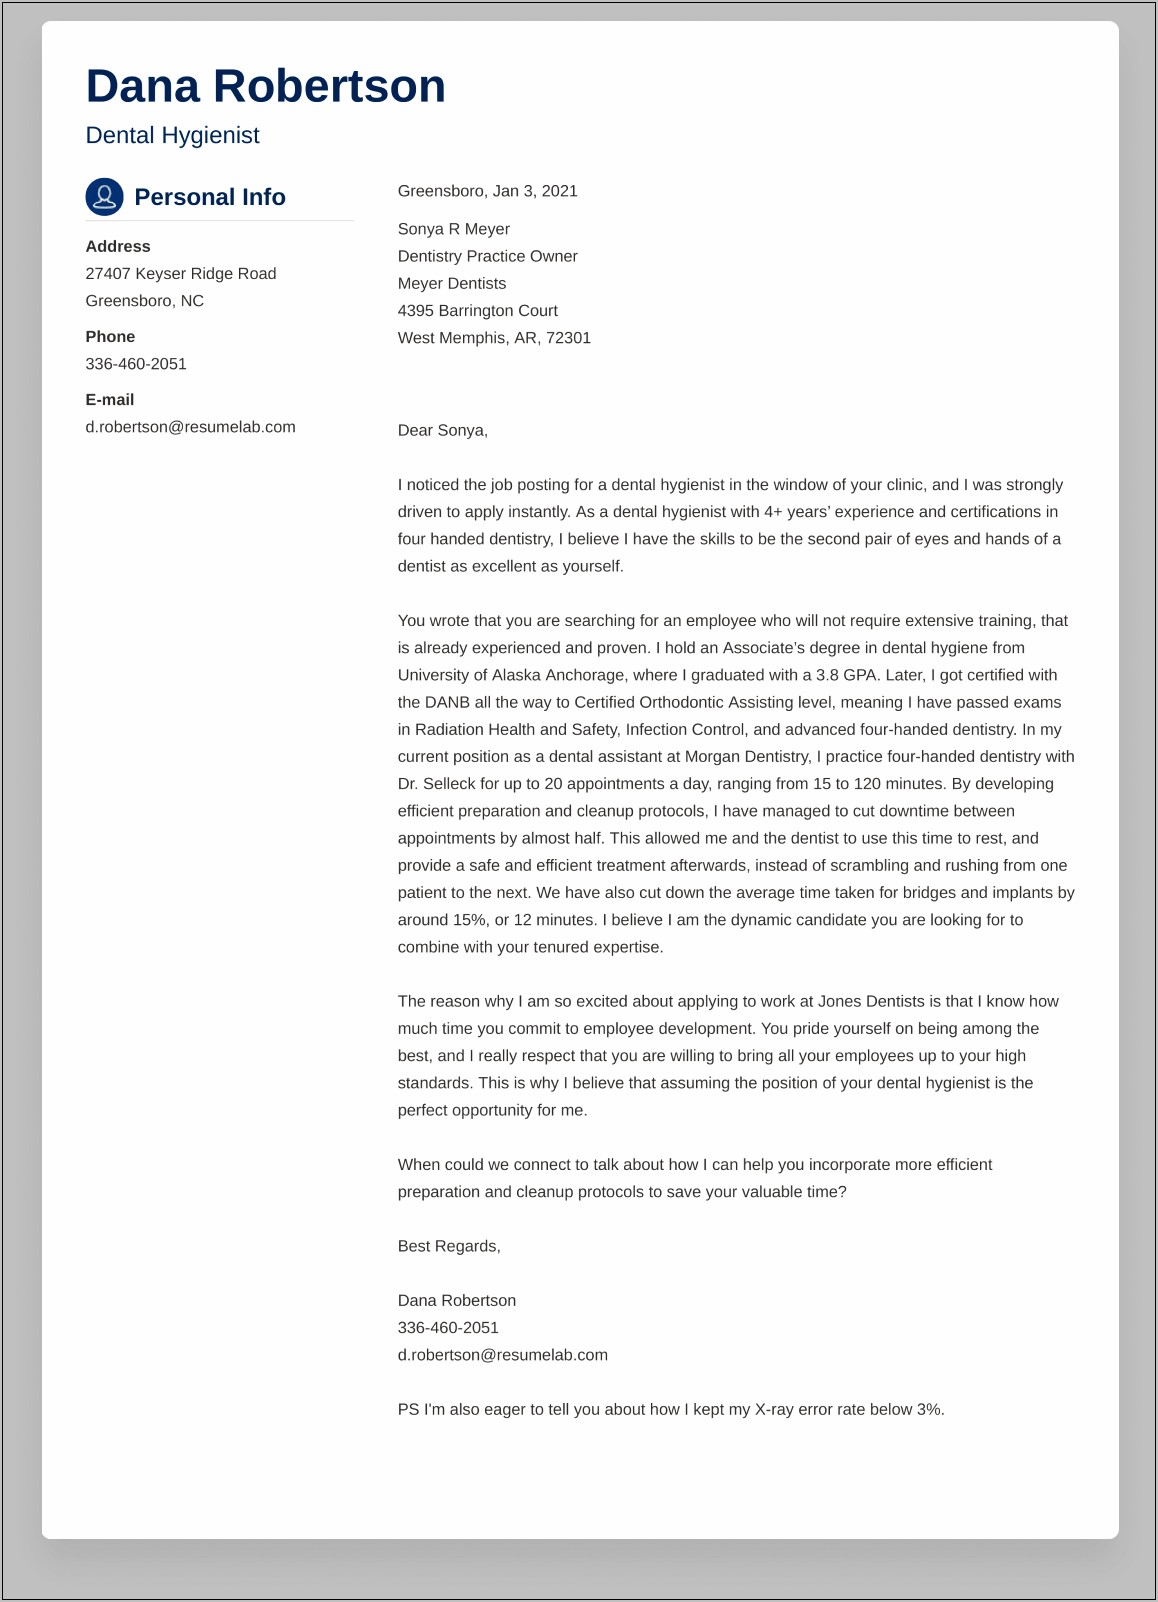 Sample Resume Cover Letter For Internal Position